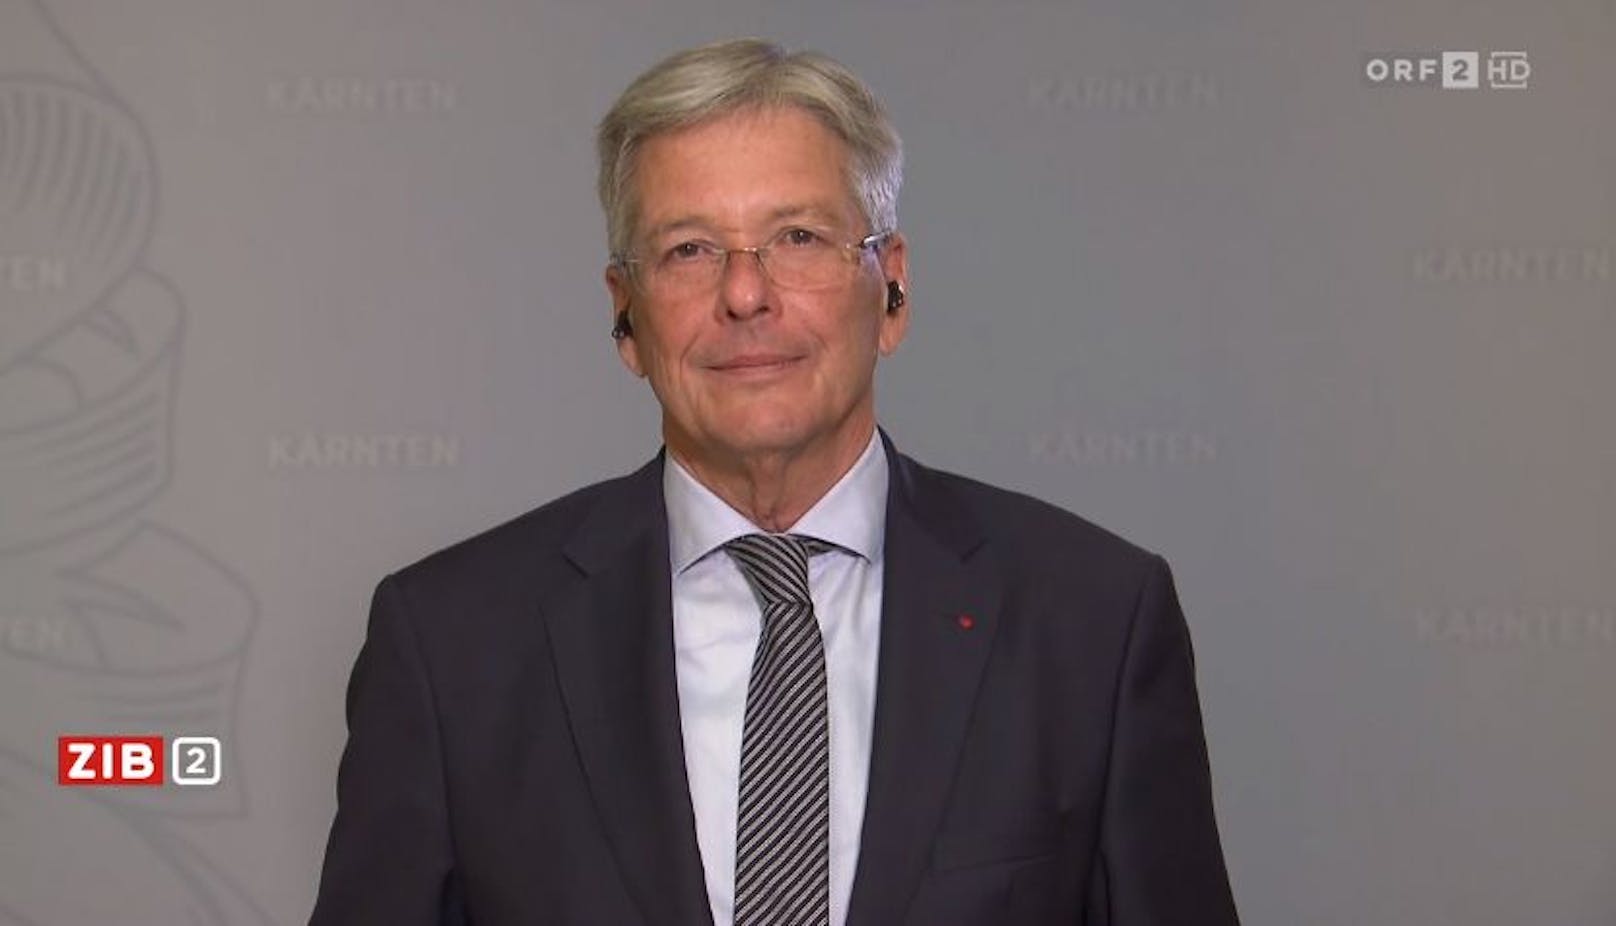 Kärntens Landeschef Peter Kaiser (SPÖ) in der ZIB2